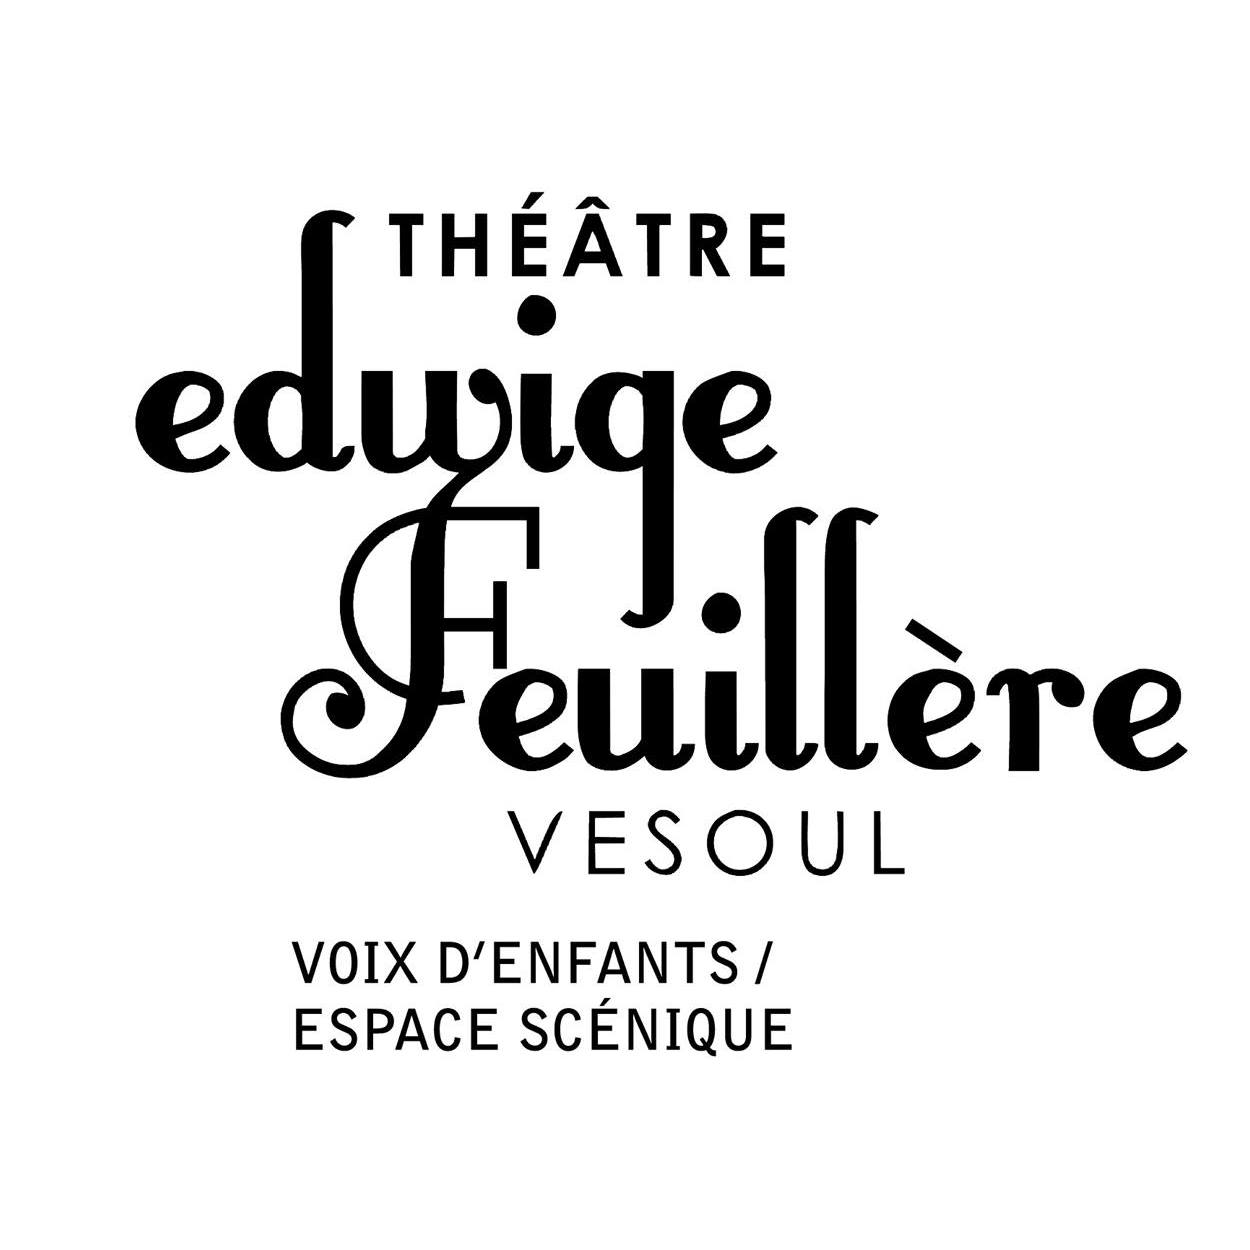 Théâtre Edwige Feuillère